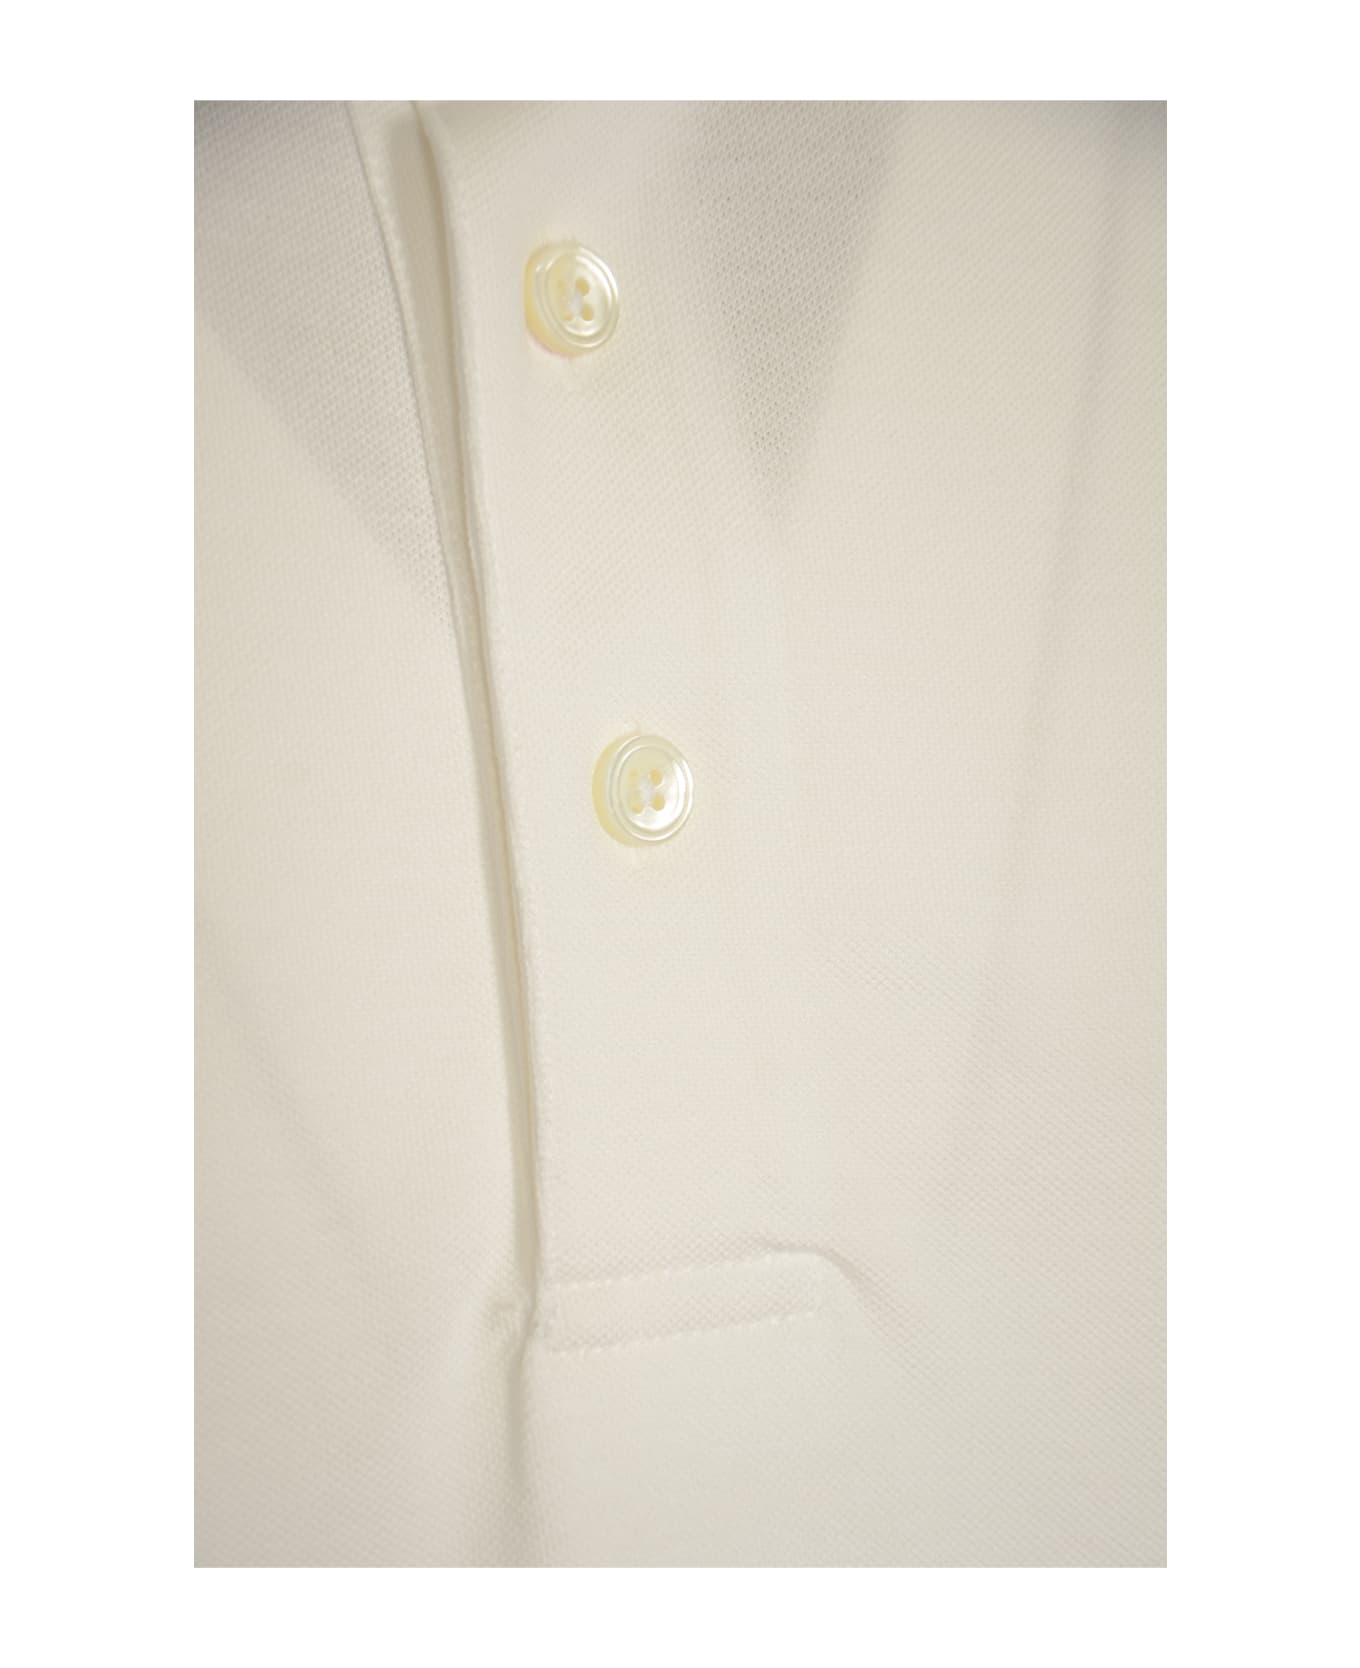 Circolo 1901 Classic Buttoned Polo Shirt - White